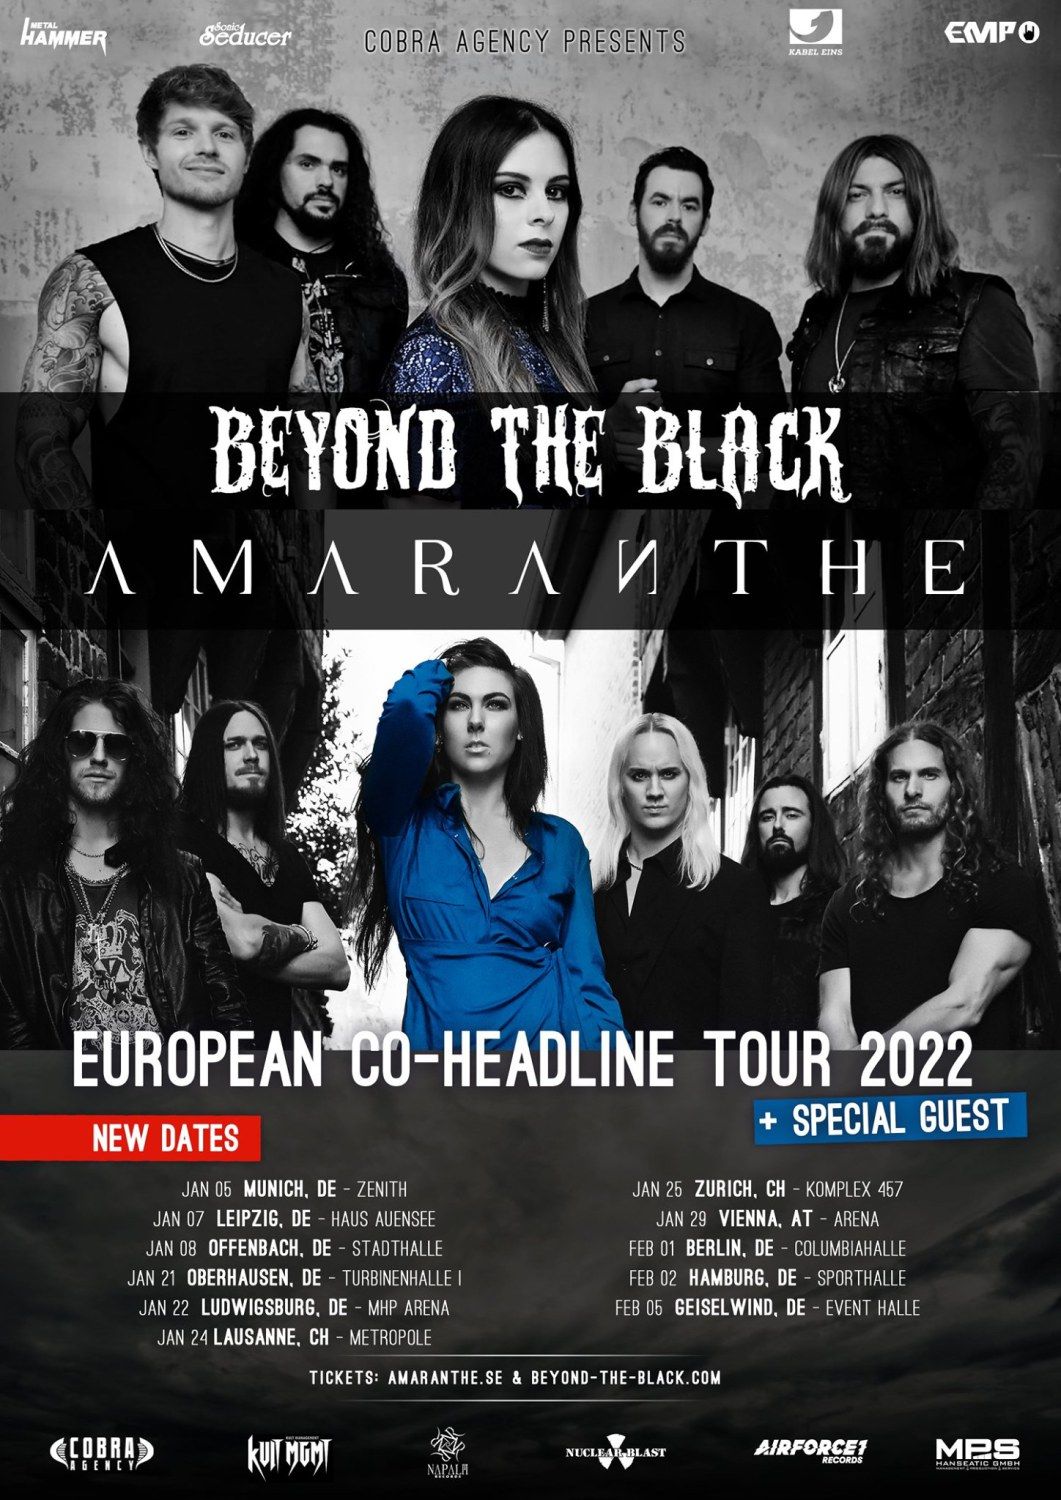 Co-Headliner-Tour in Europa von 2021 auf 2022 verschoben